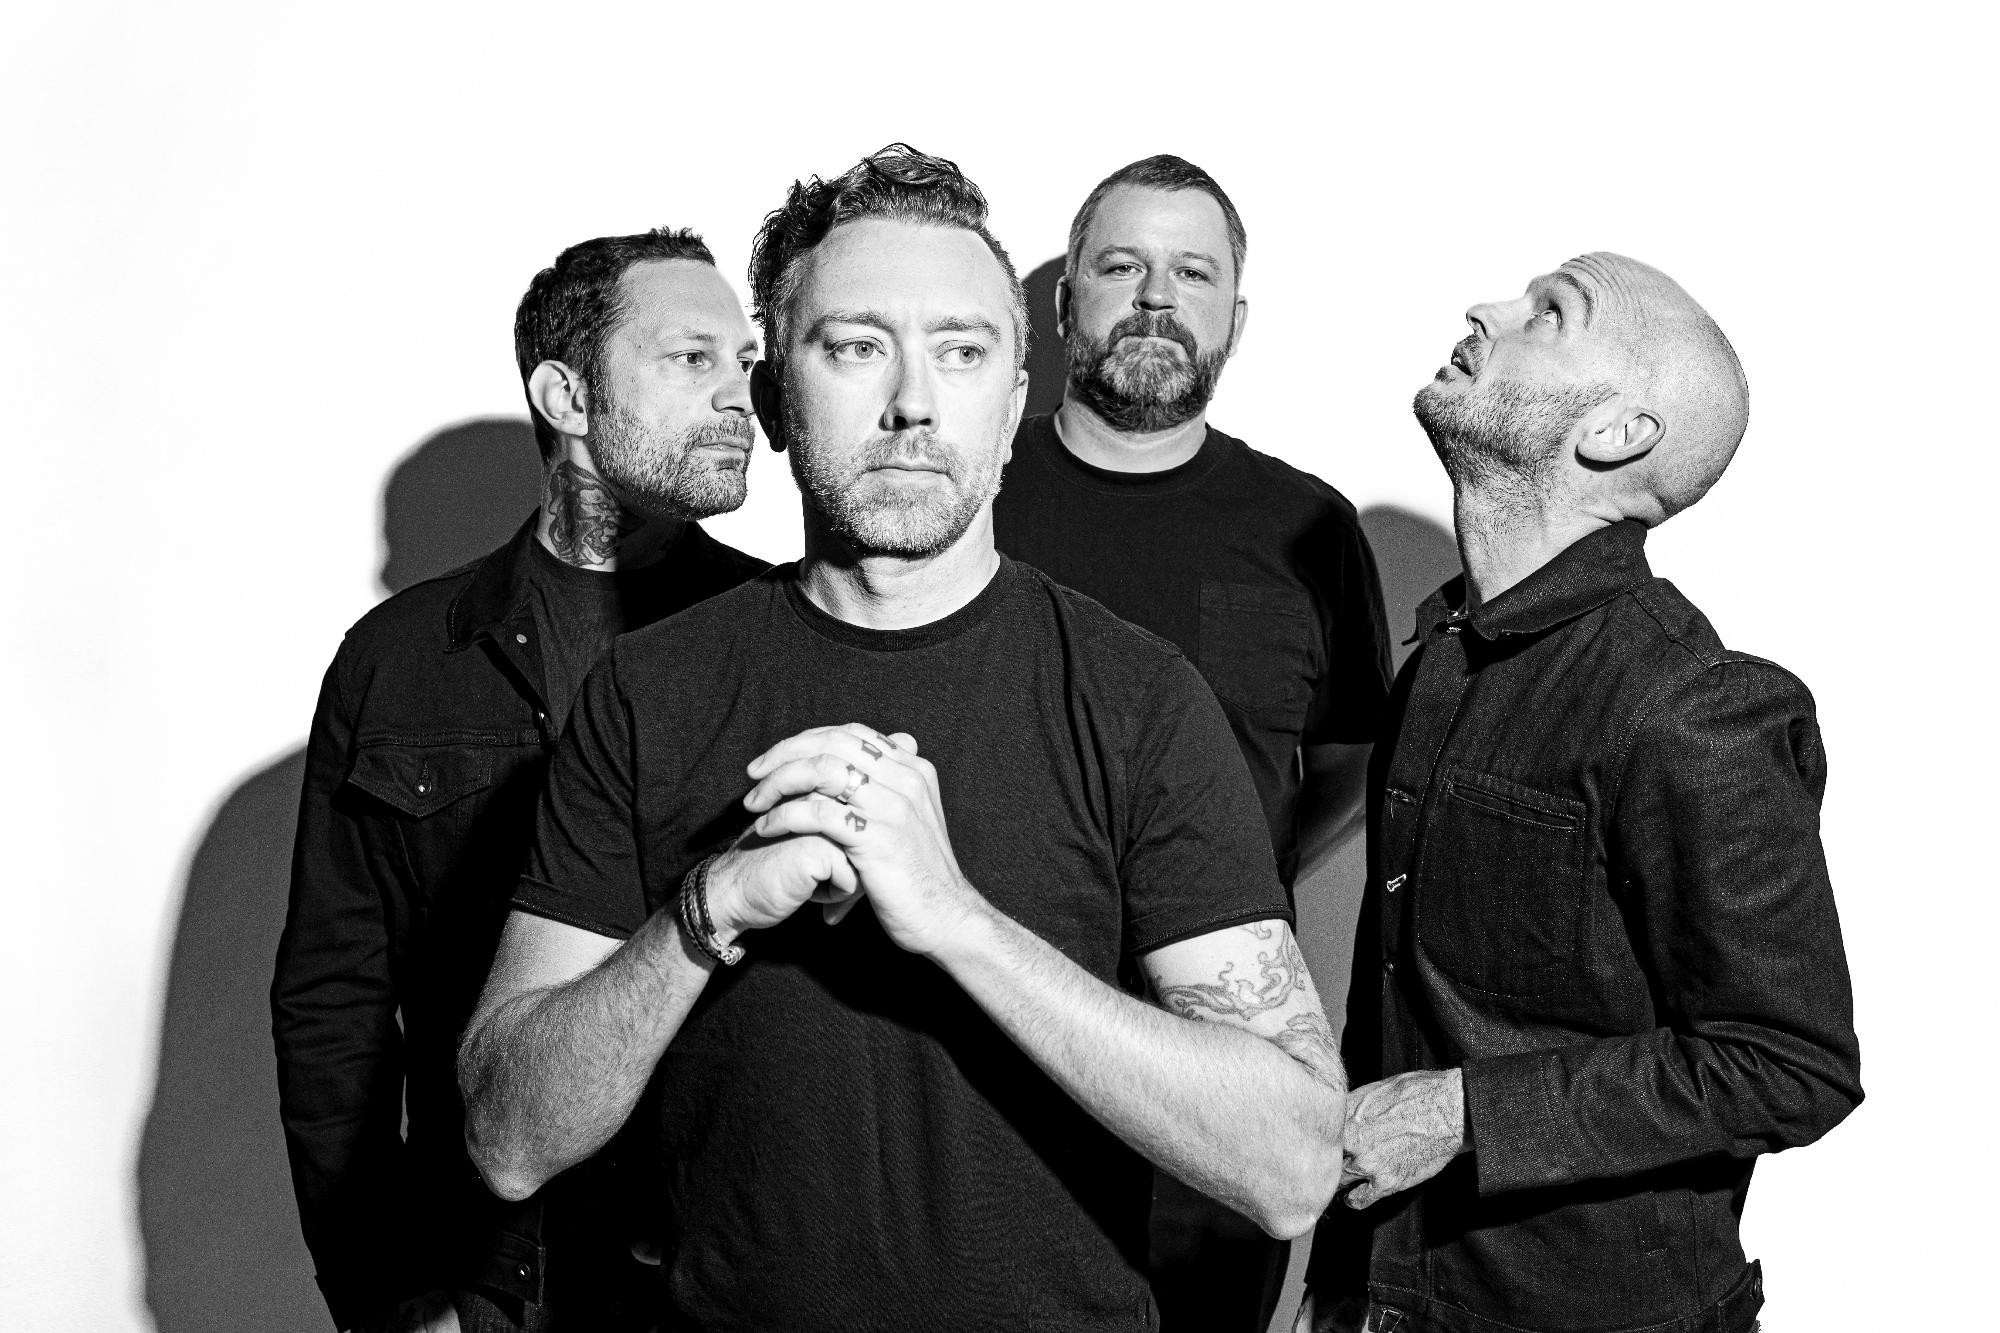 A hazai közönségnek is bemutatja új albumát a Rise Against - június 14-én koncerteznek a Budapest Parkban